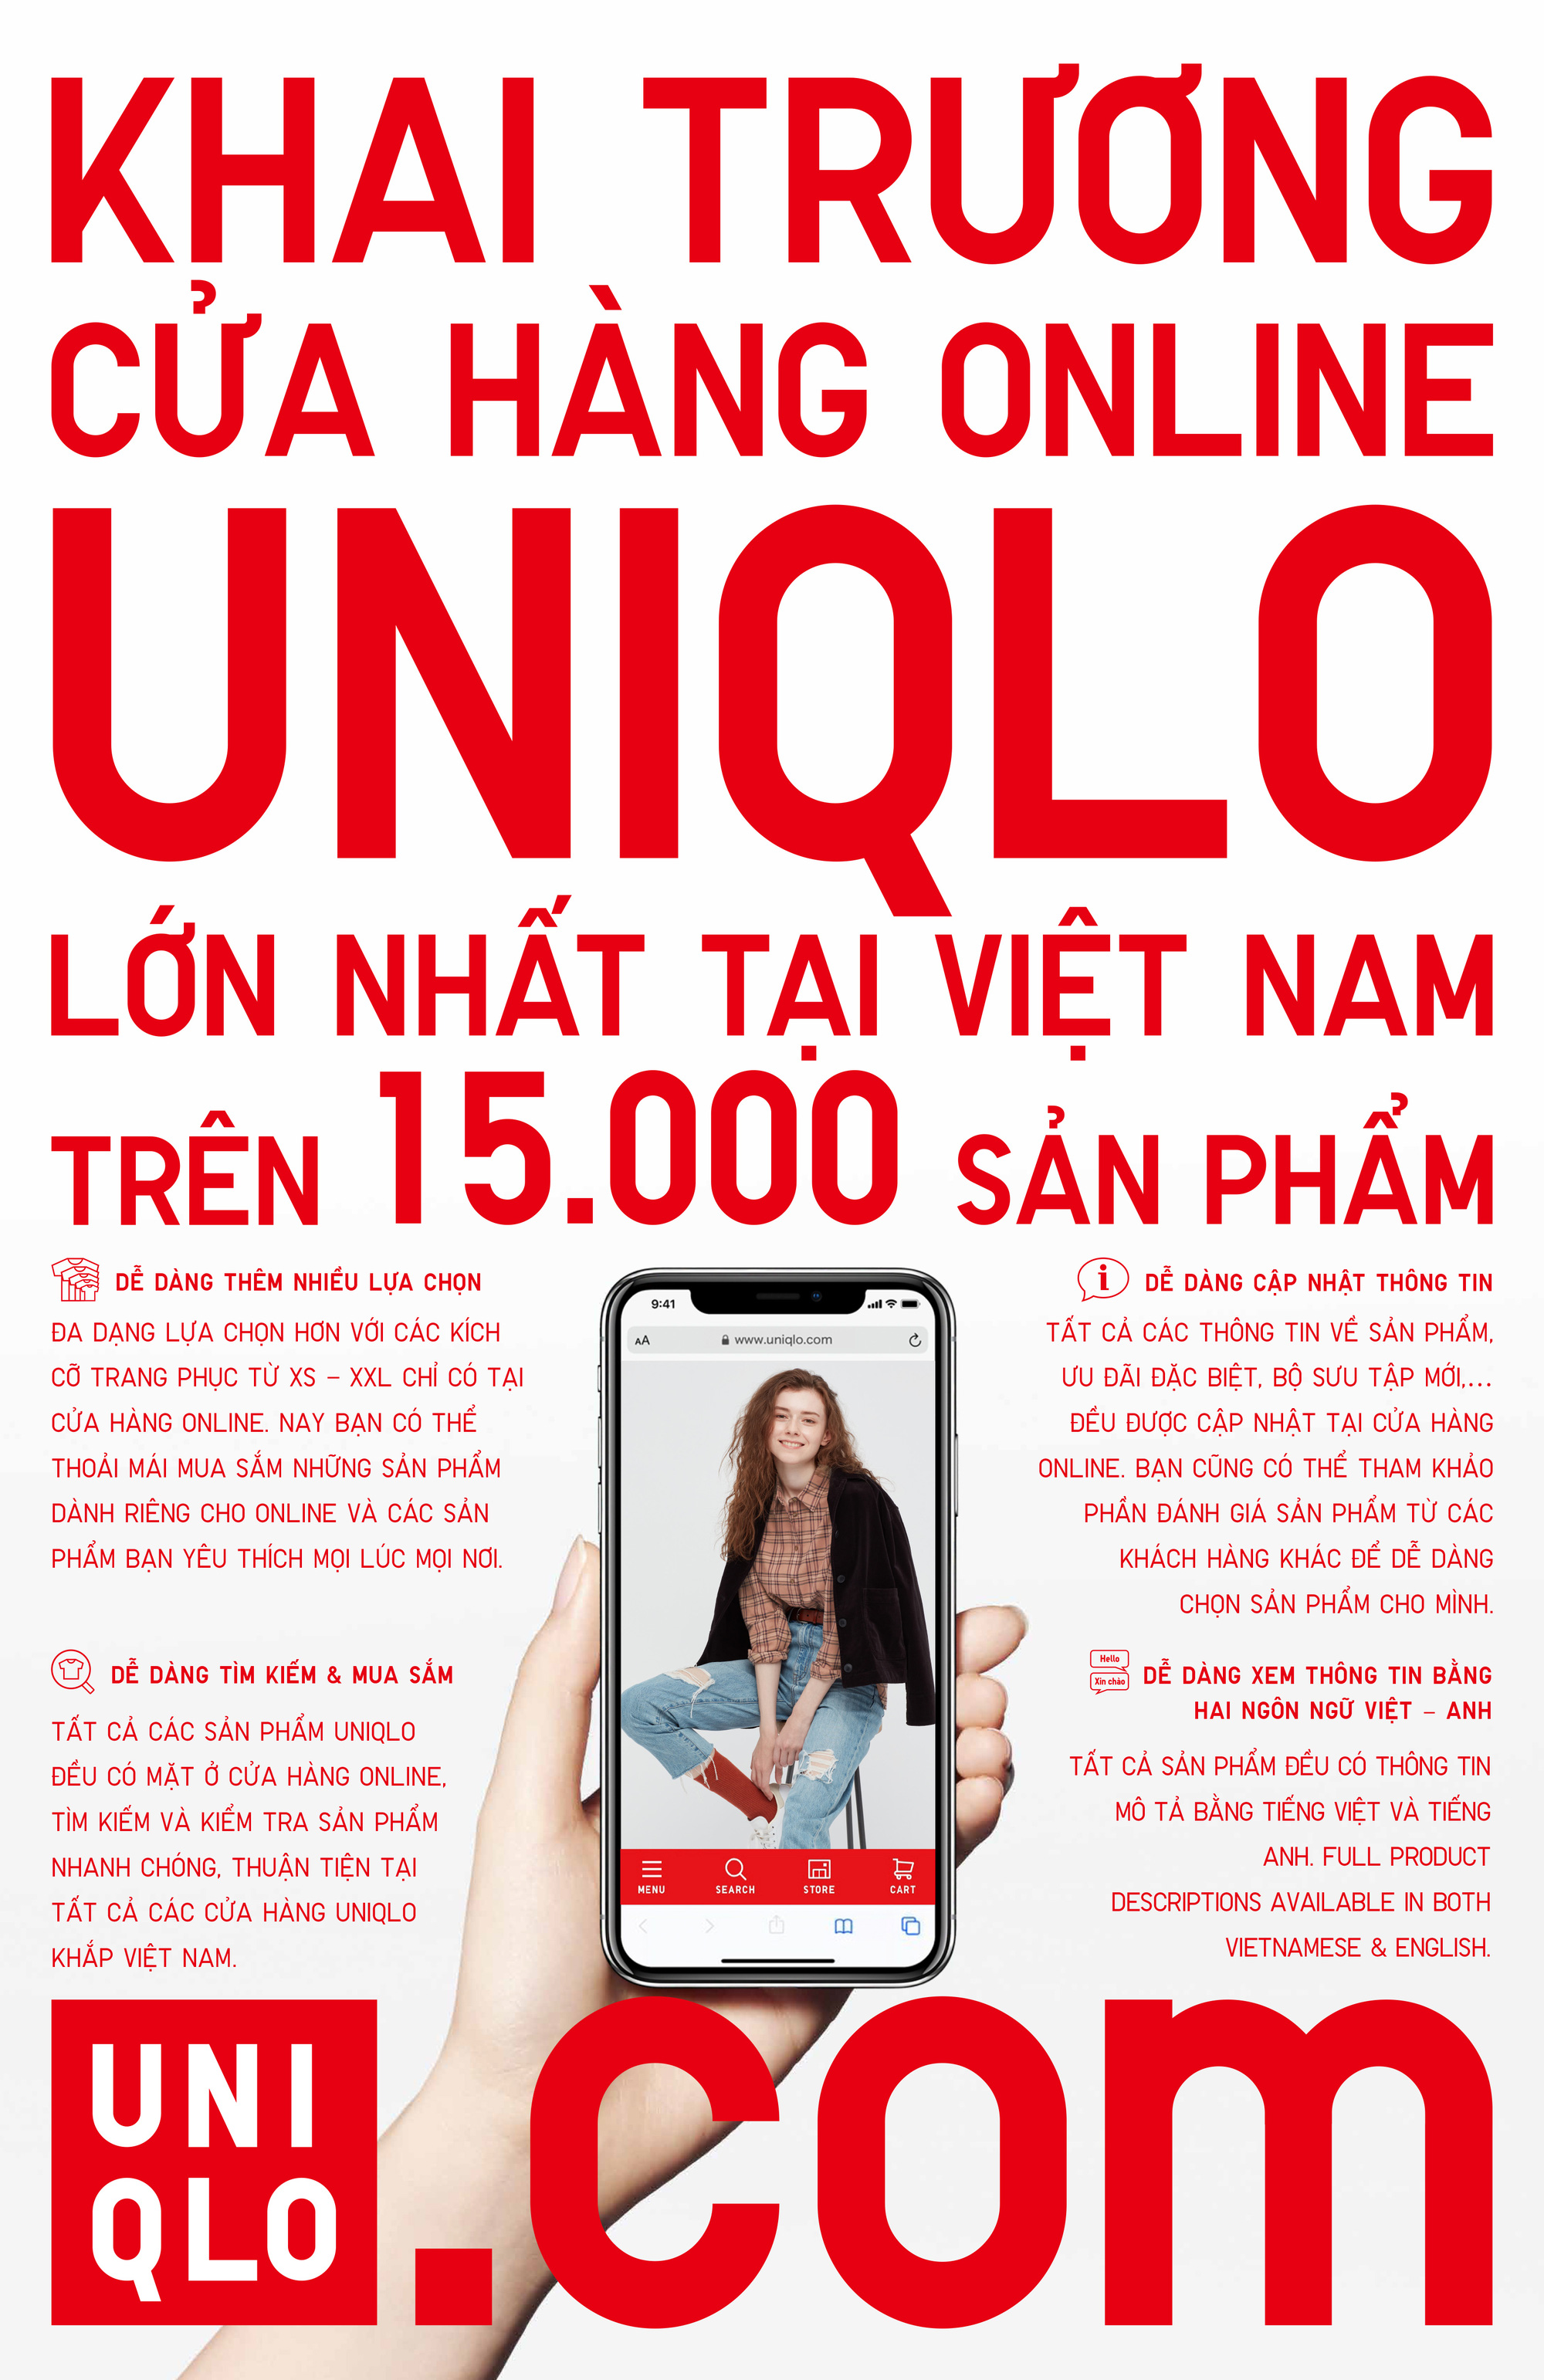 UNIQLO Chính Thức Khai Trương Cửa Hàng Online Tại Việt Nam Vào Ngày 5 Tháng 11 - Ảnh 1.